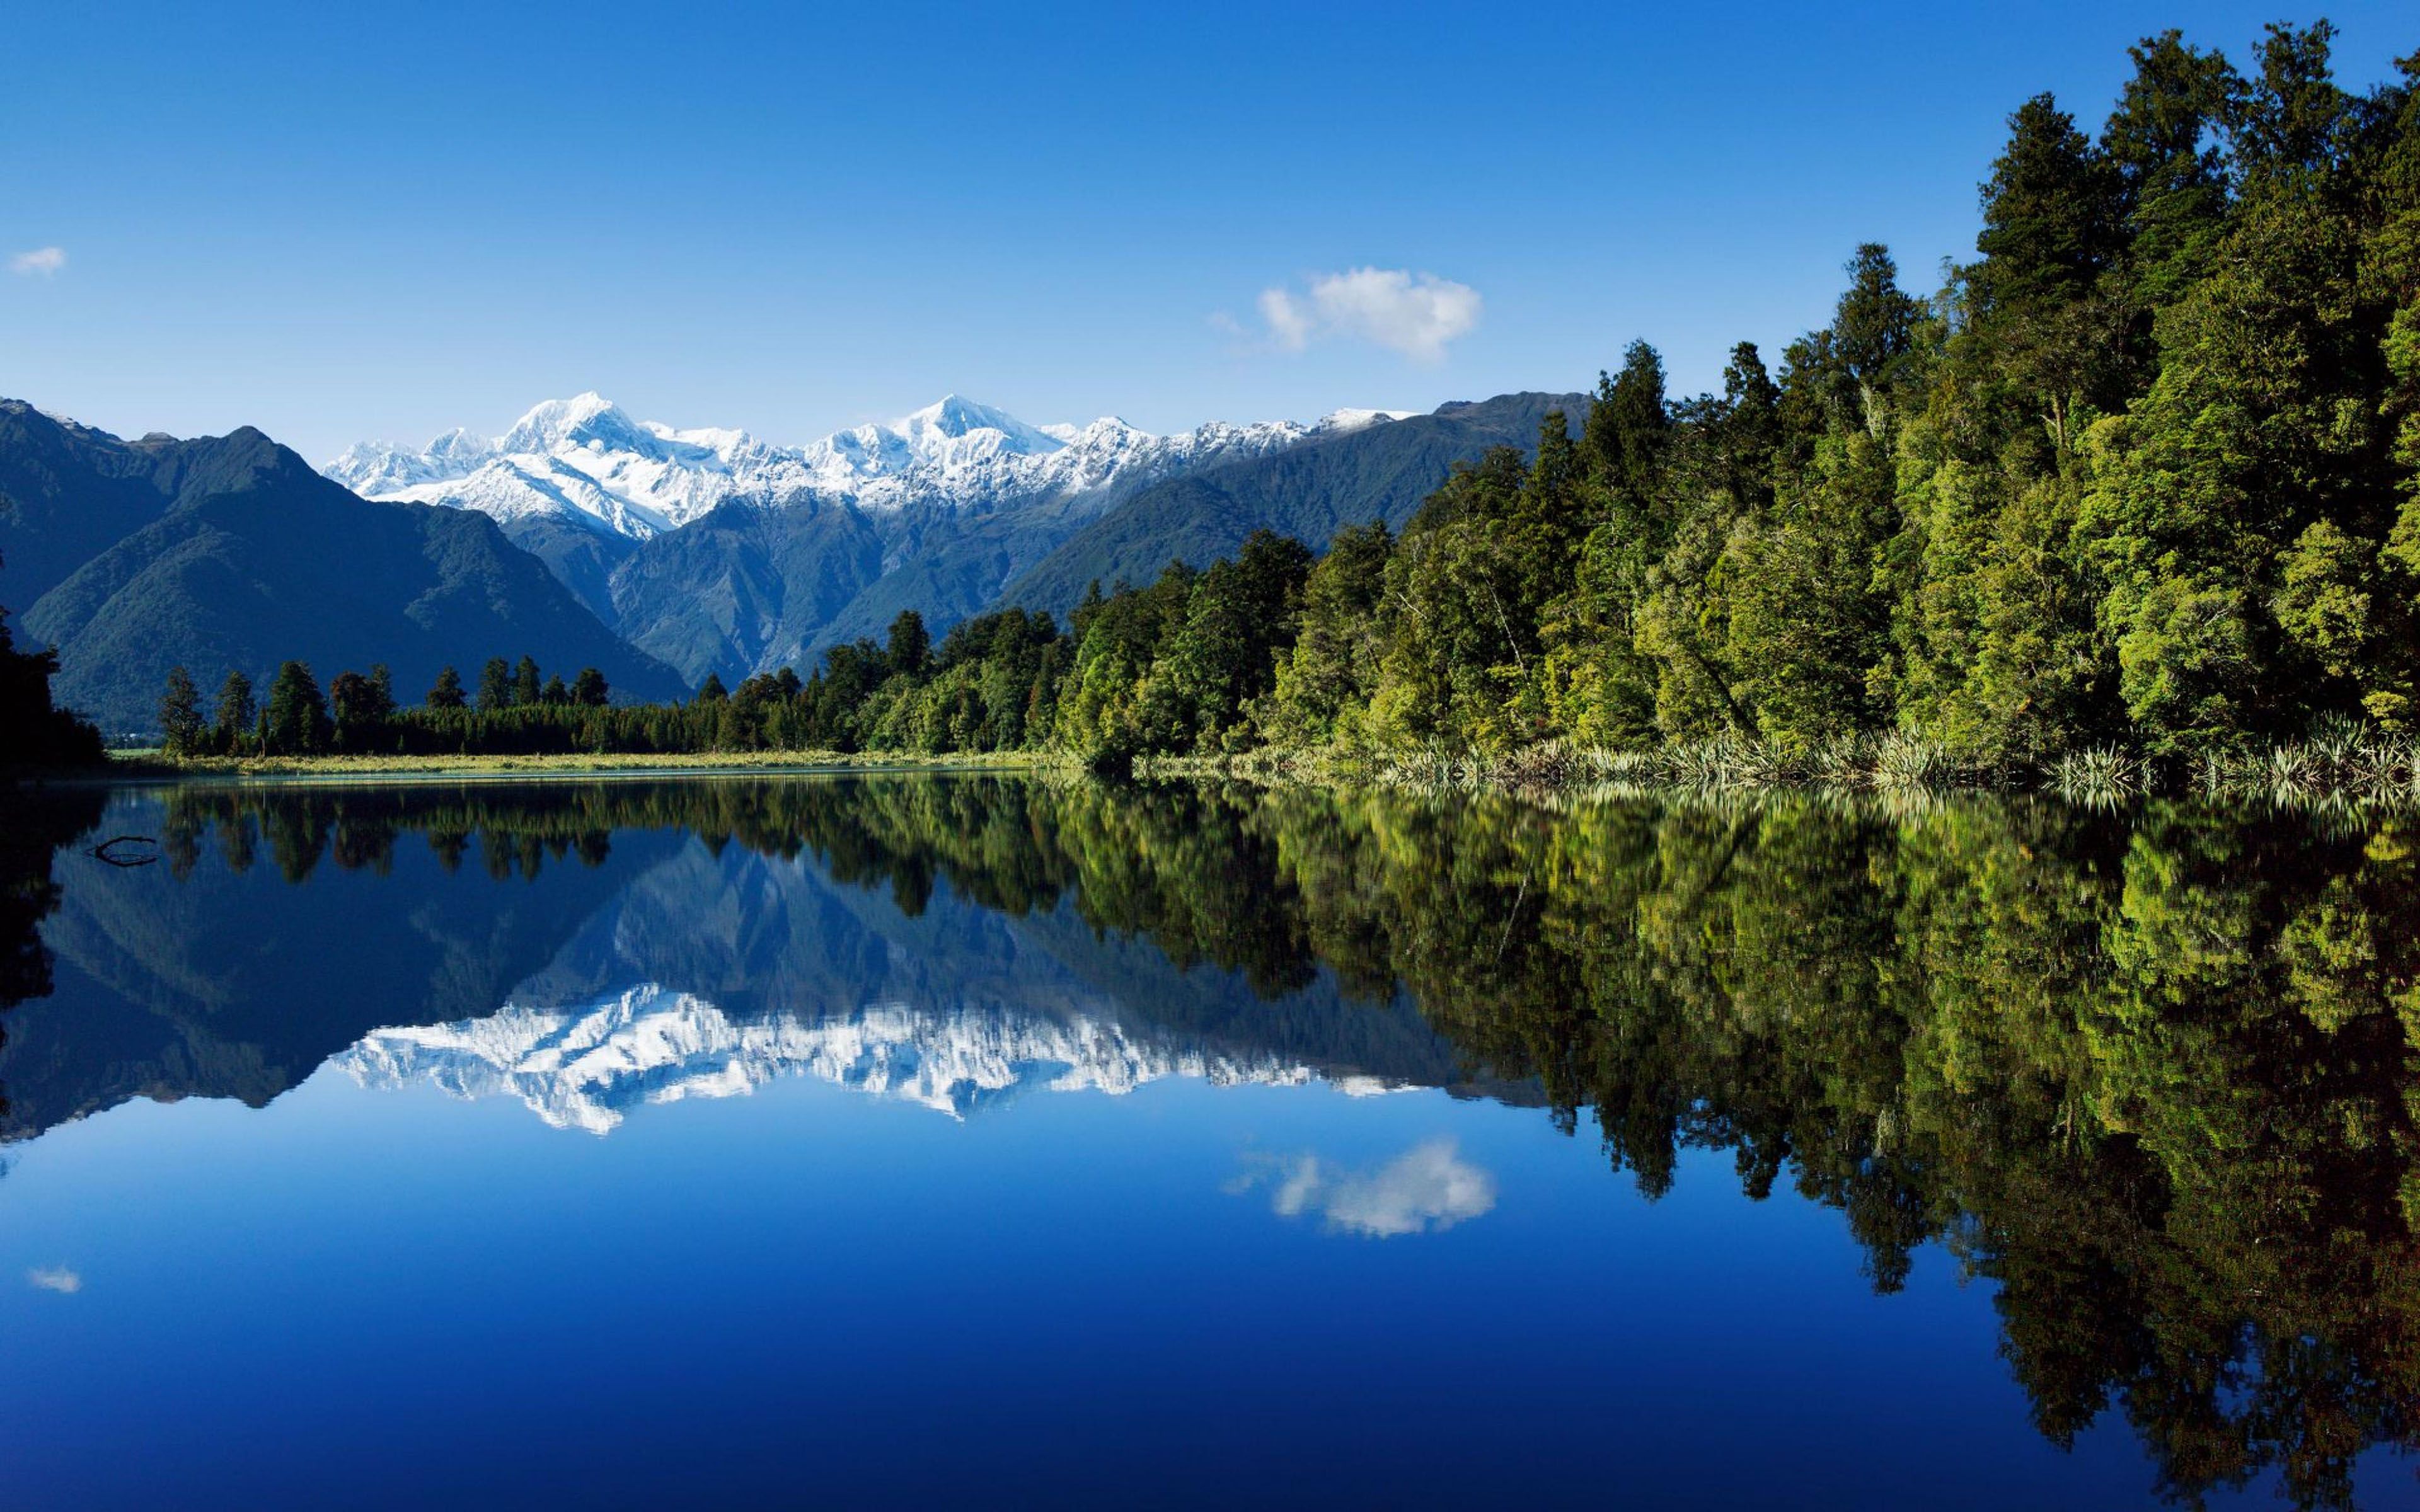 Обои на телефон самые красивые в мире. Озеро Мэтисон новая Зеландия. Озеро Хавеа новая Зеландия. Озеро Рица Абхазия лето. Шварцвальд озеро.